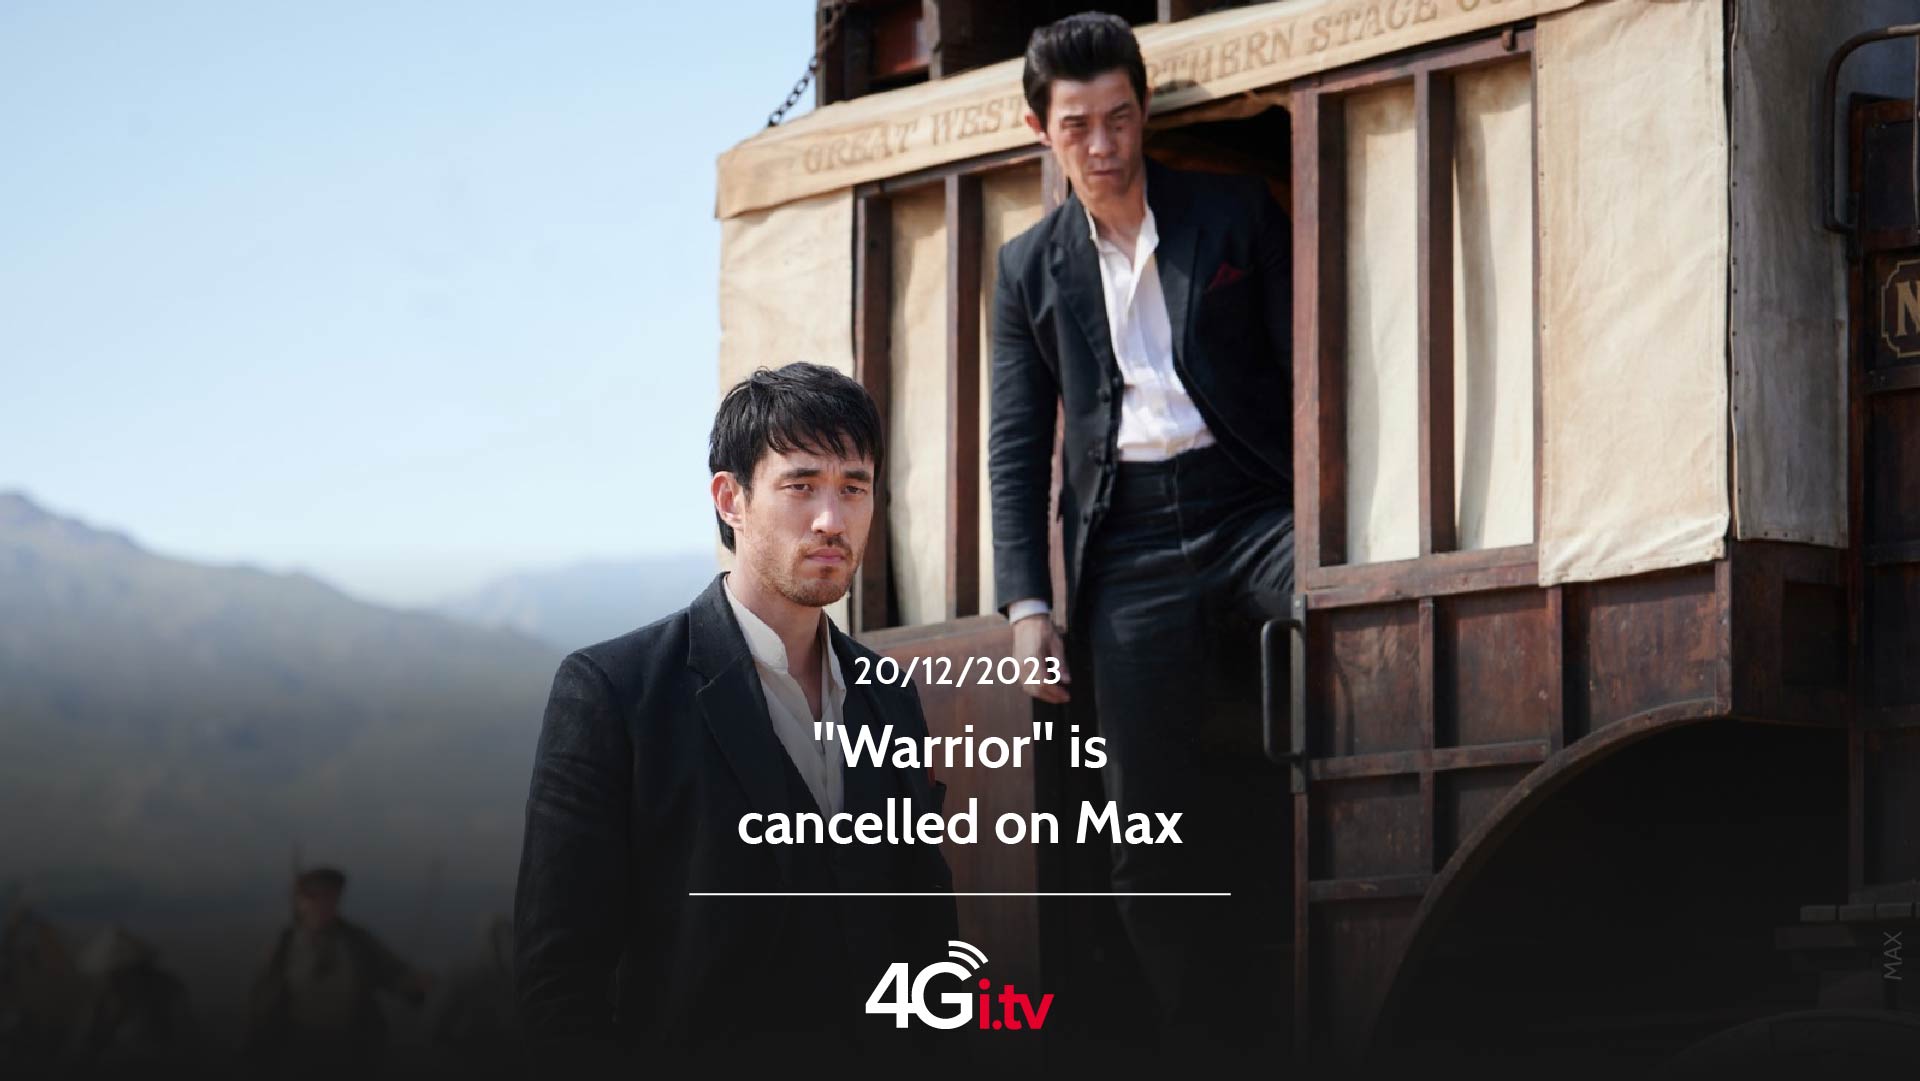 Lesen Sie mehr über den Artikel “Warrior” is cancelled on Max